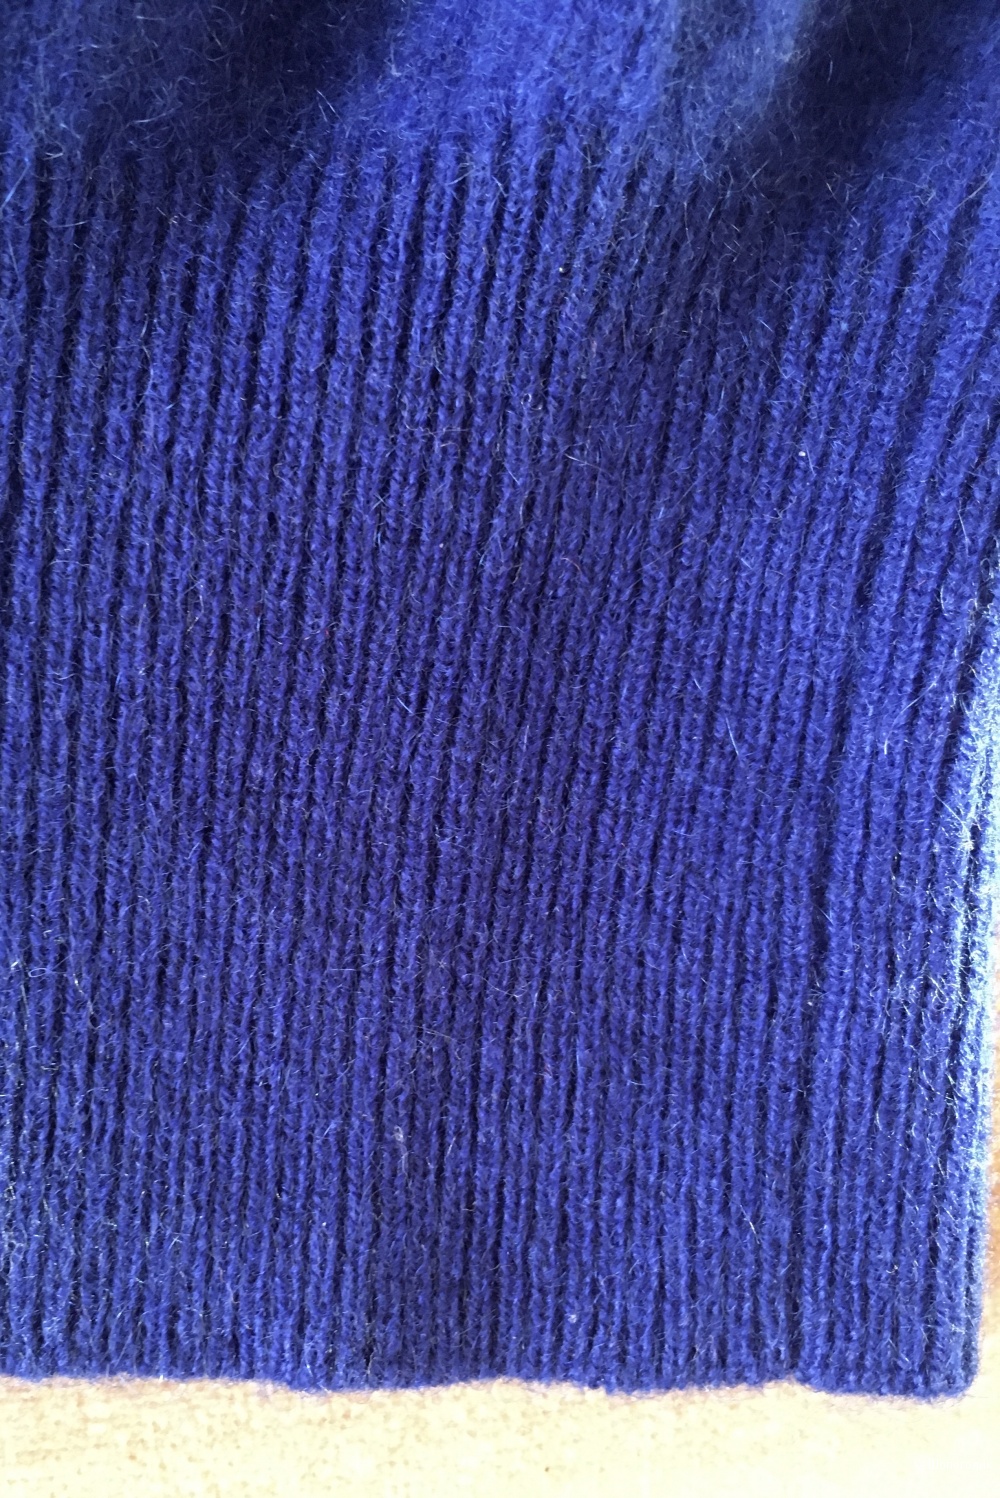 Кашемировый джемпер свитер Zara Knit, размер S, 42